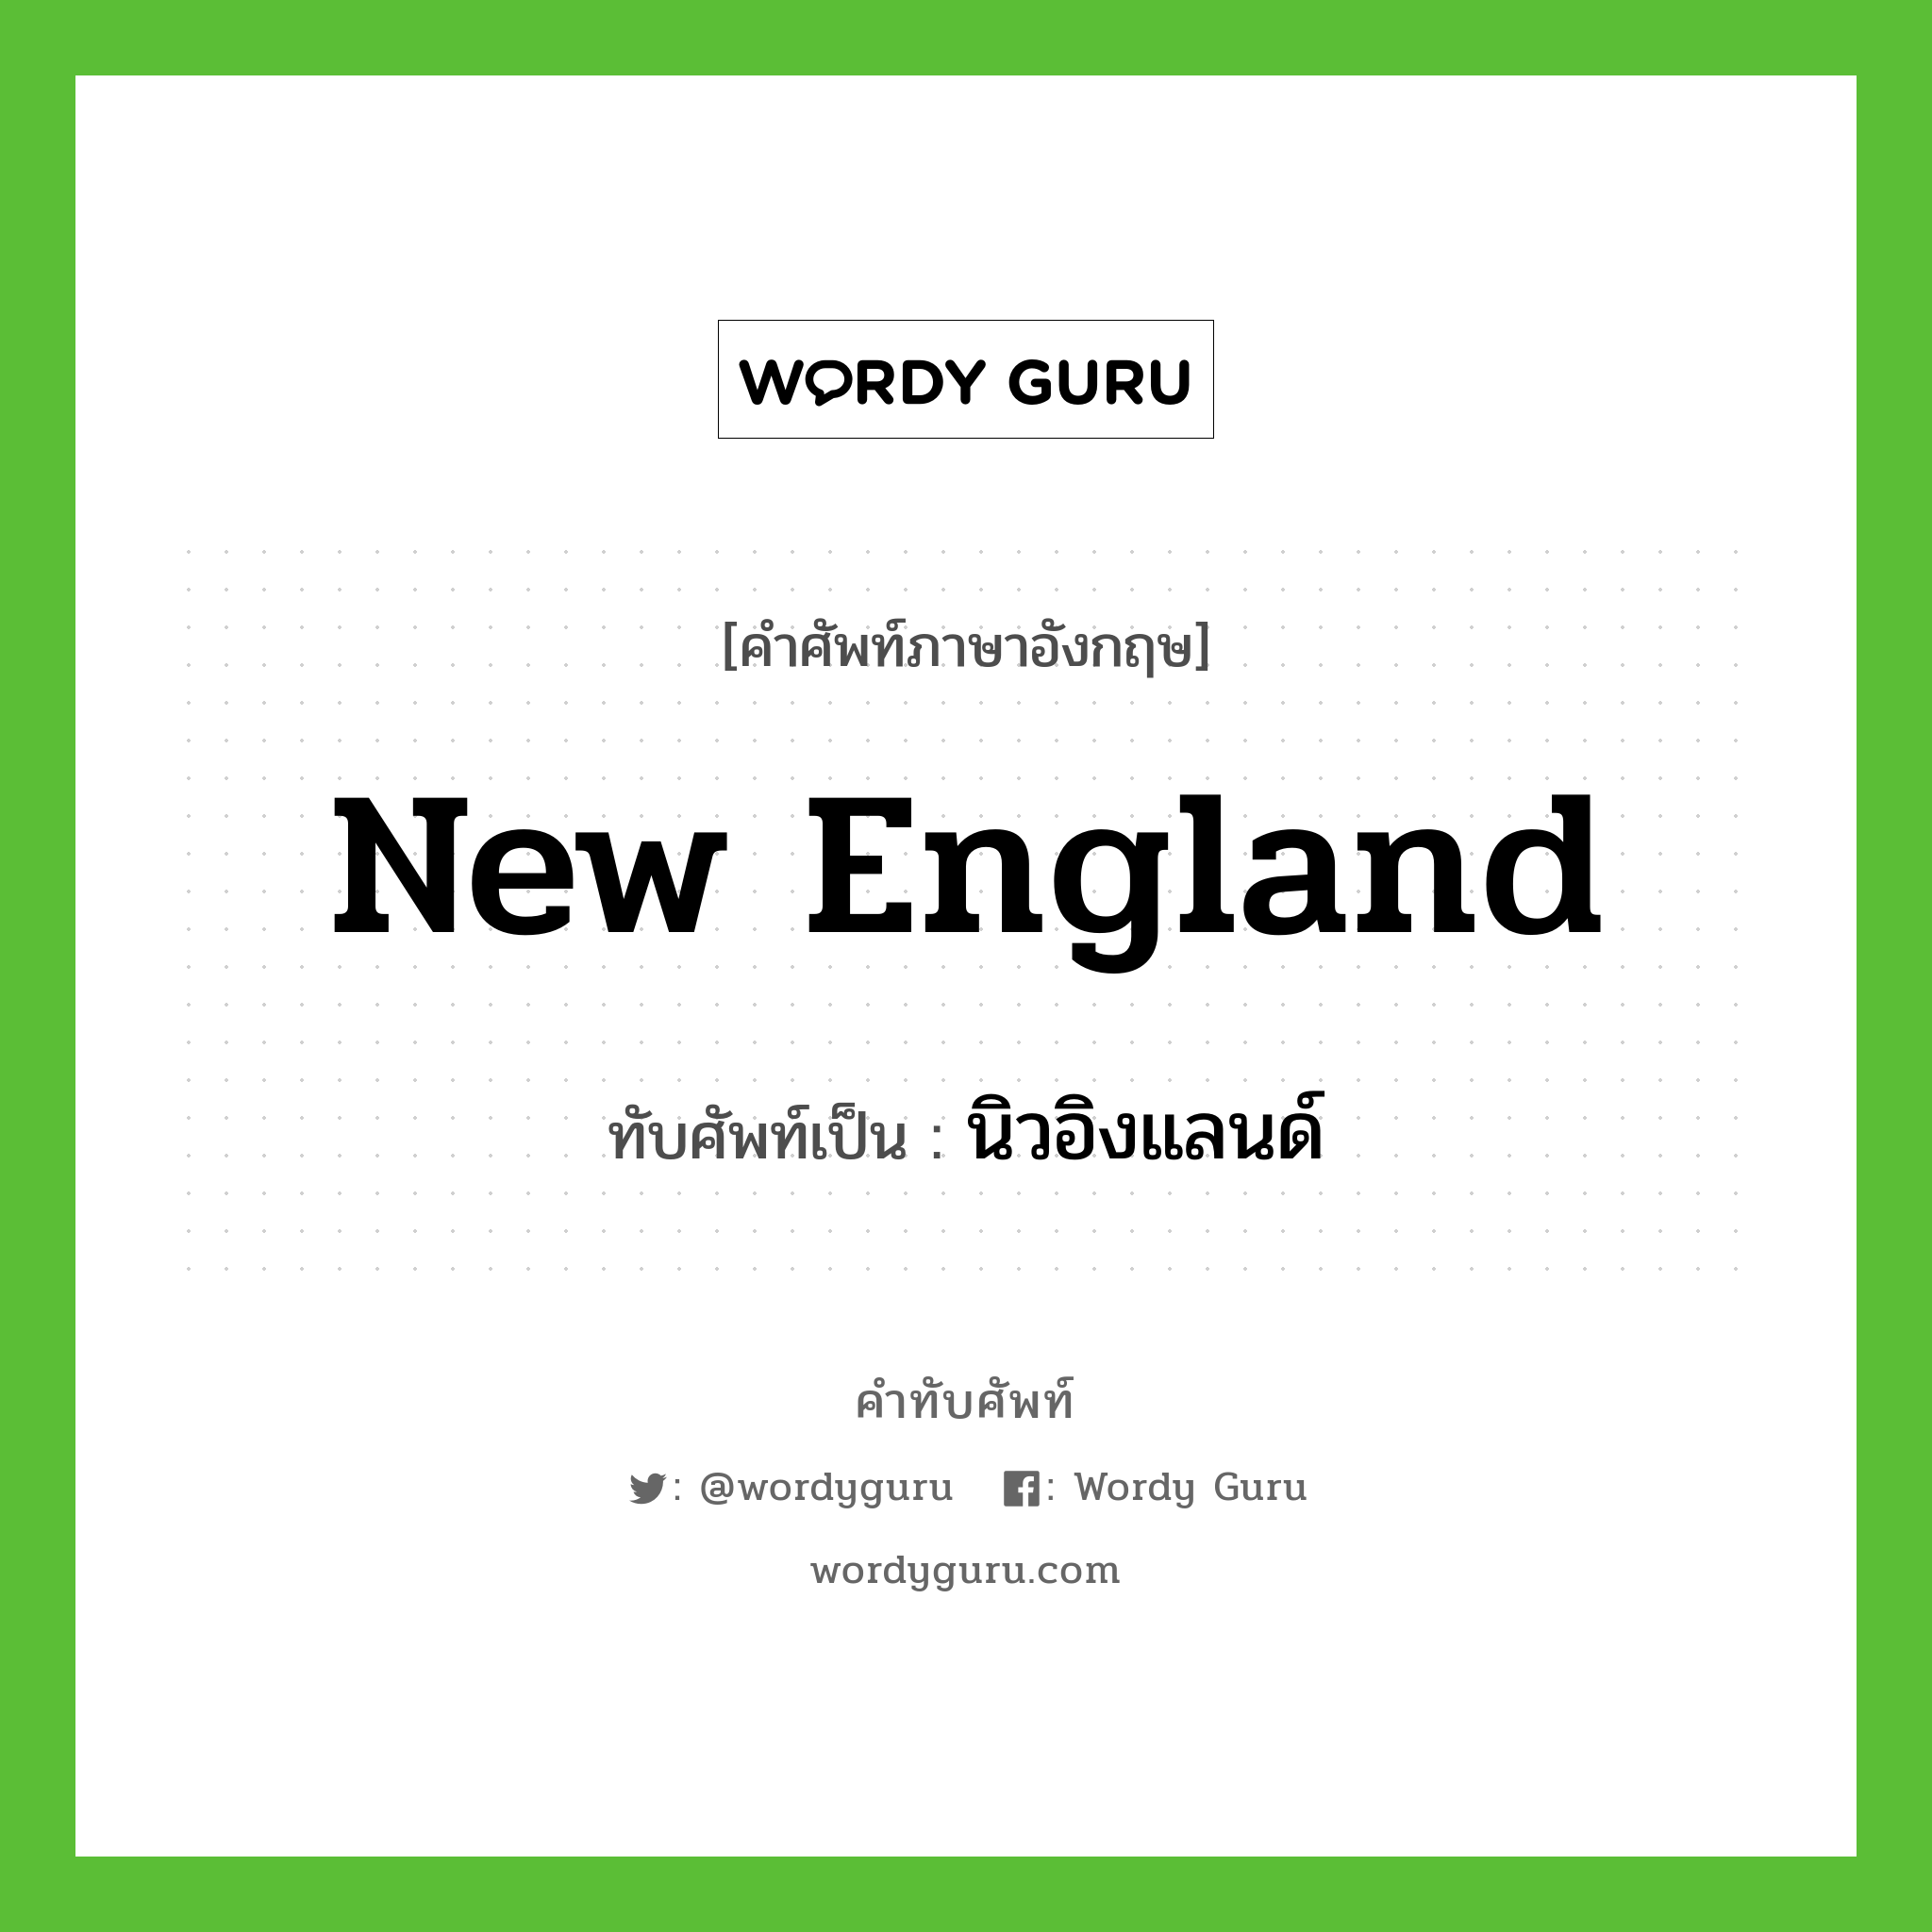 New England เขียนเป็นคำไทยว่าอะไร?, คำศัพท์ภาษาอังกฤษ New England ทับศัพท์เป็น นิวอิงแลนด์